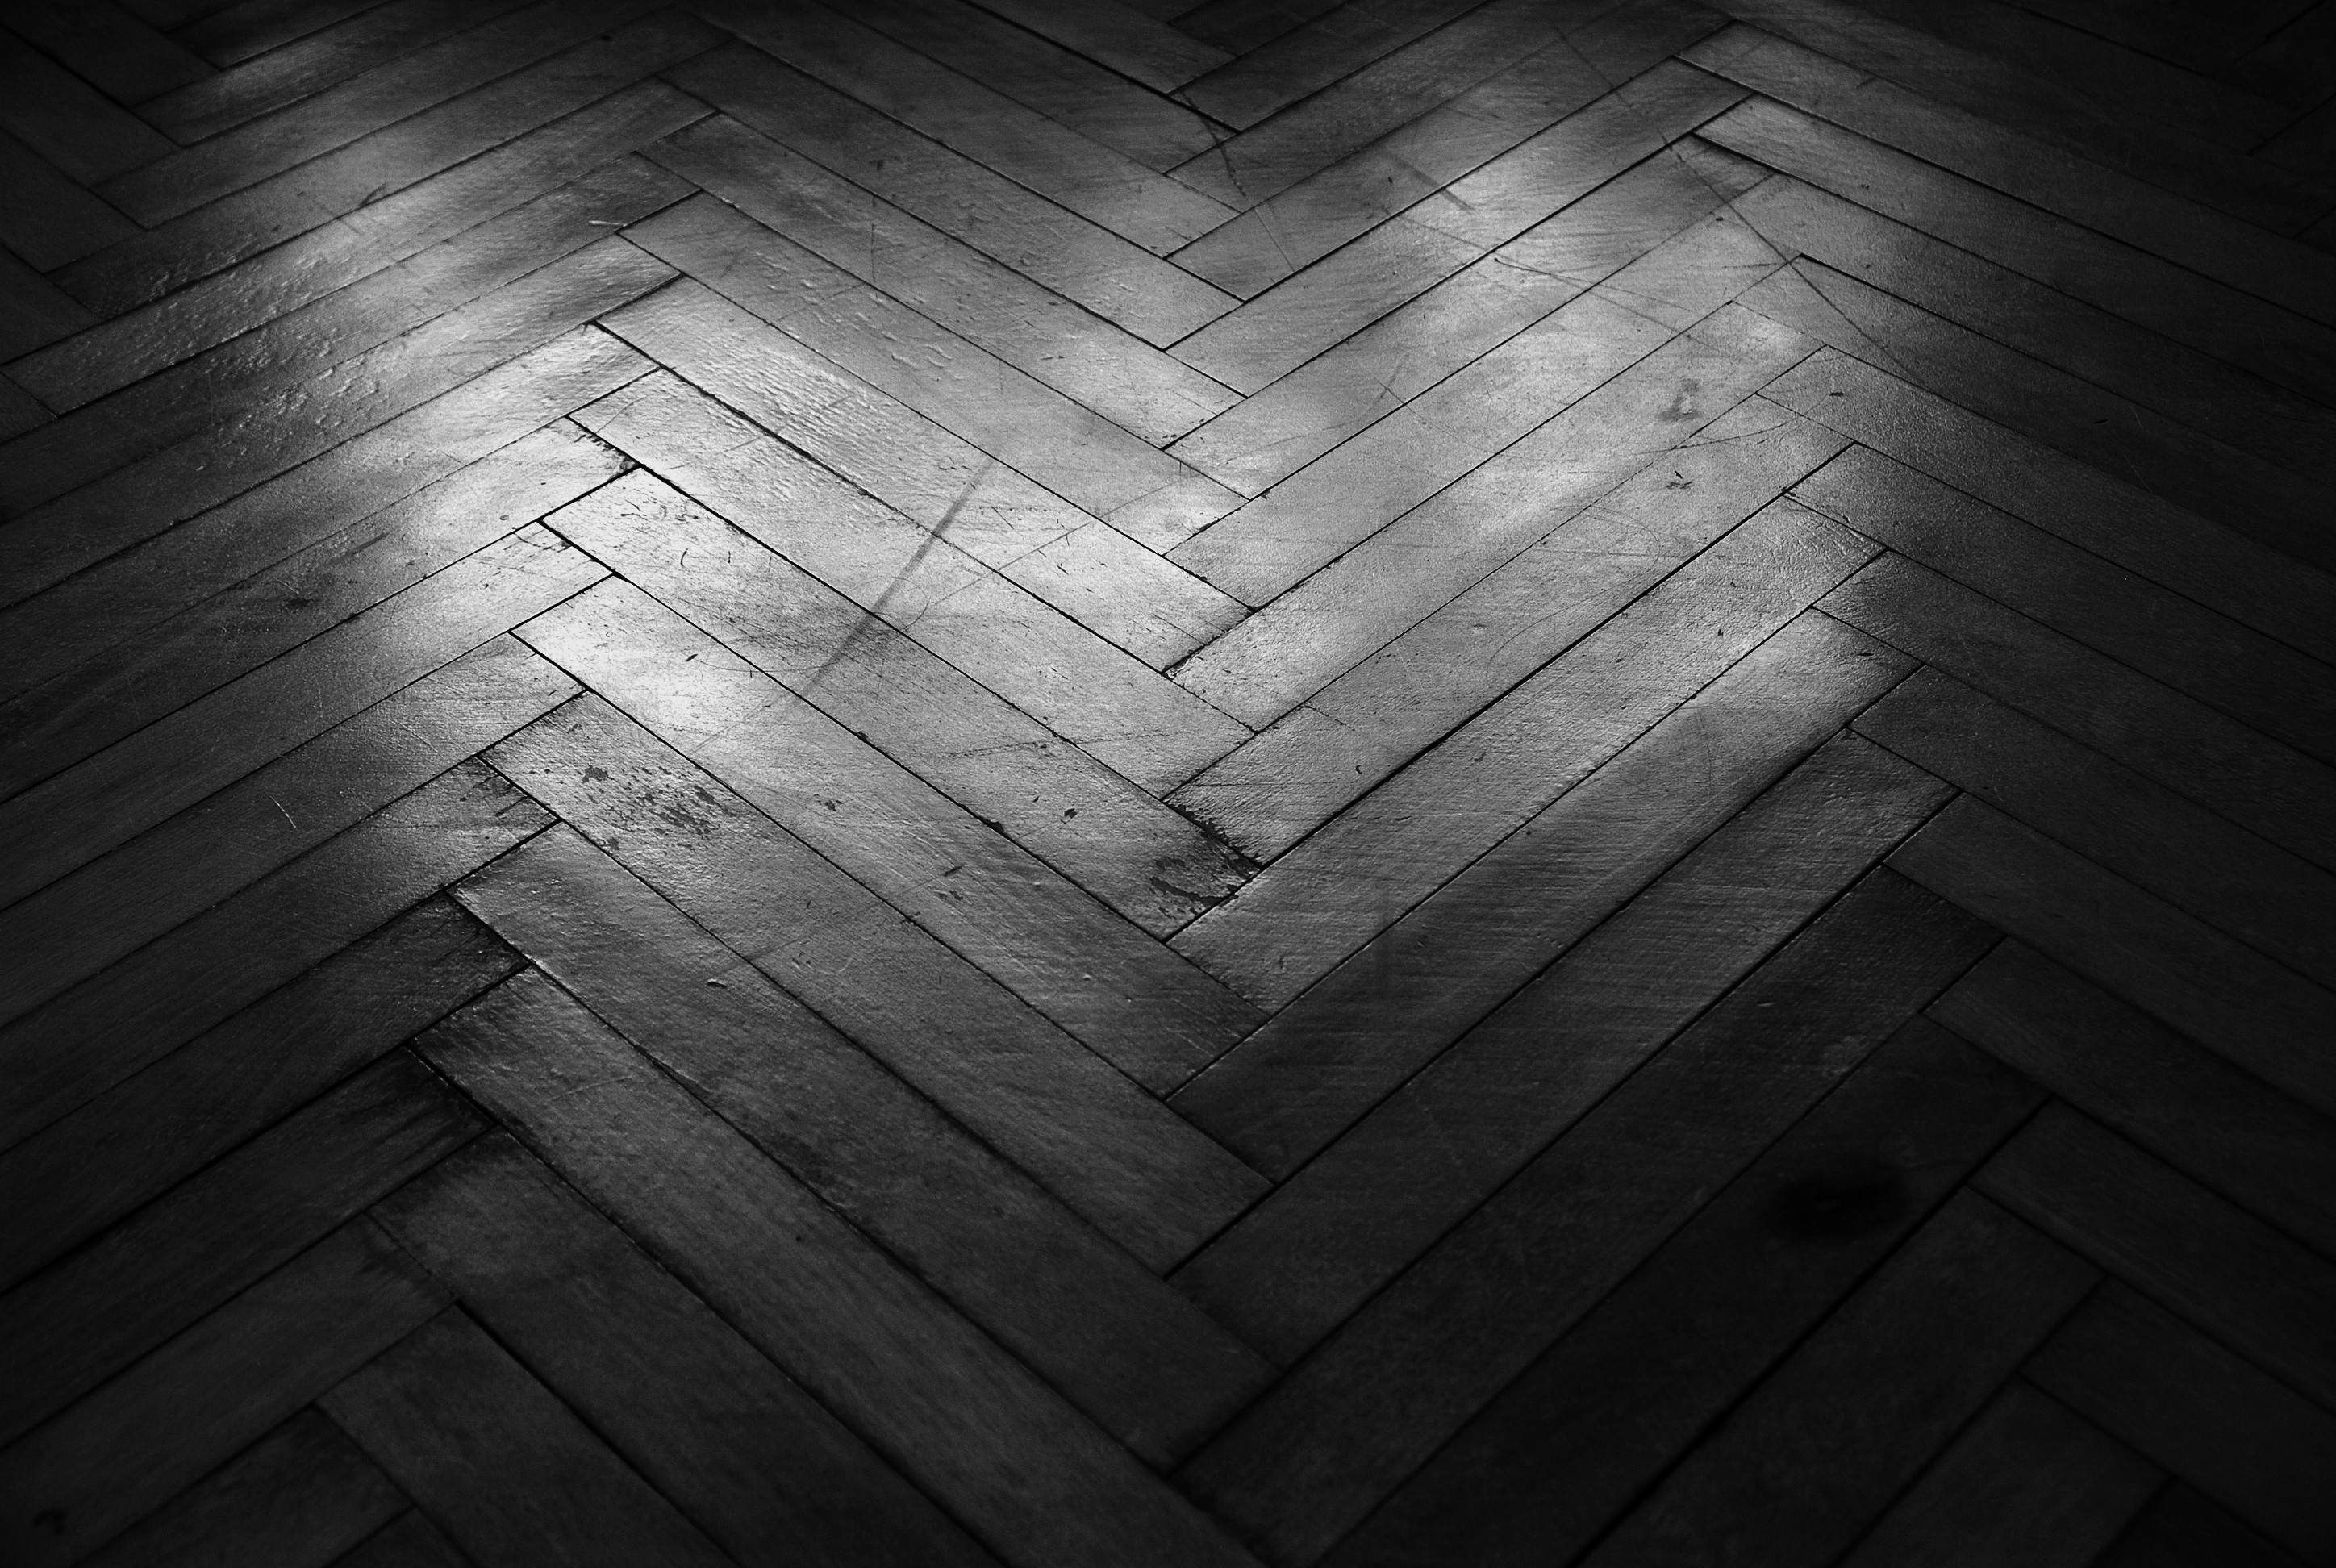 Wooden floor wallpaper. PC